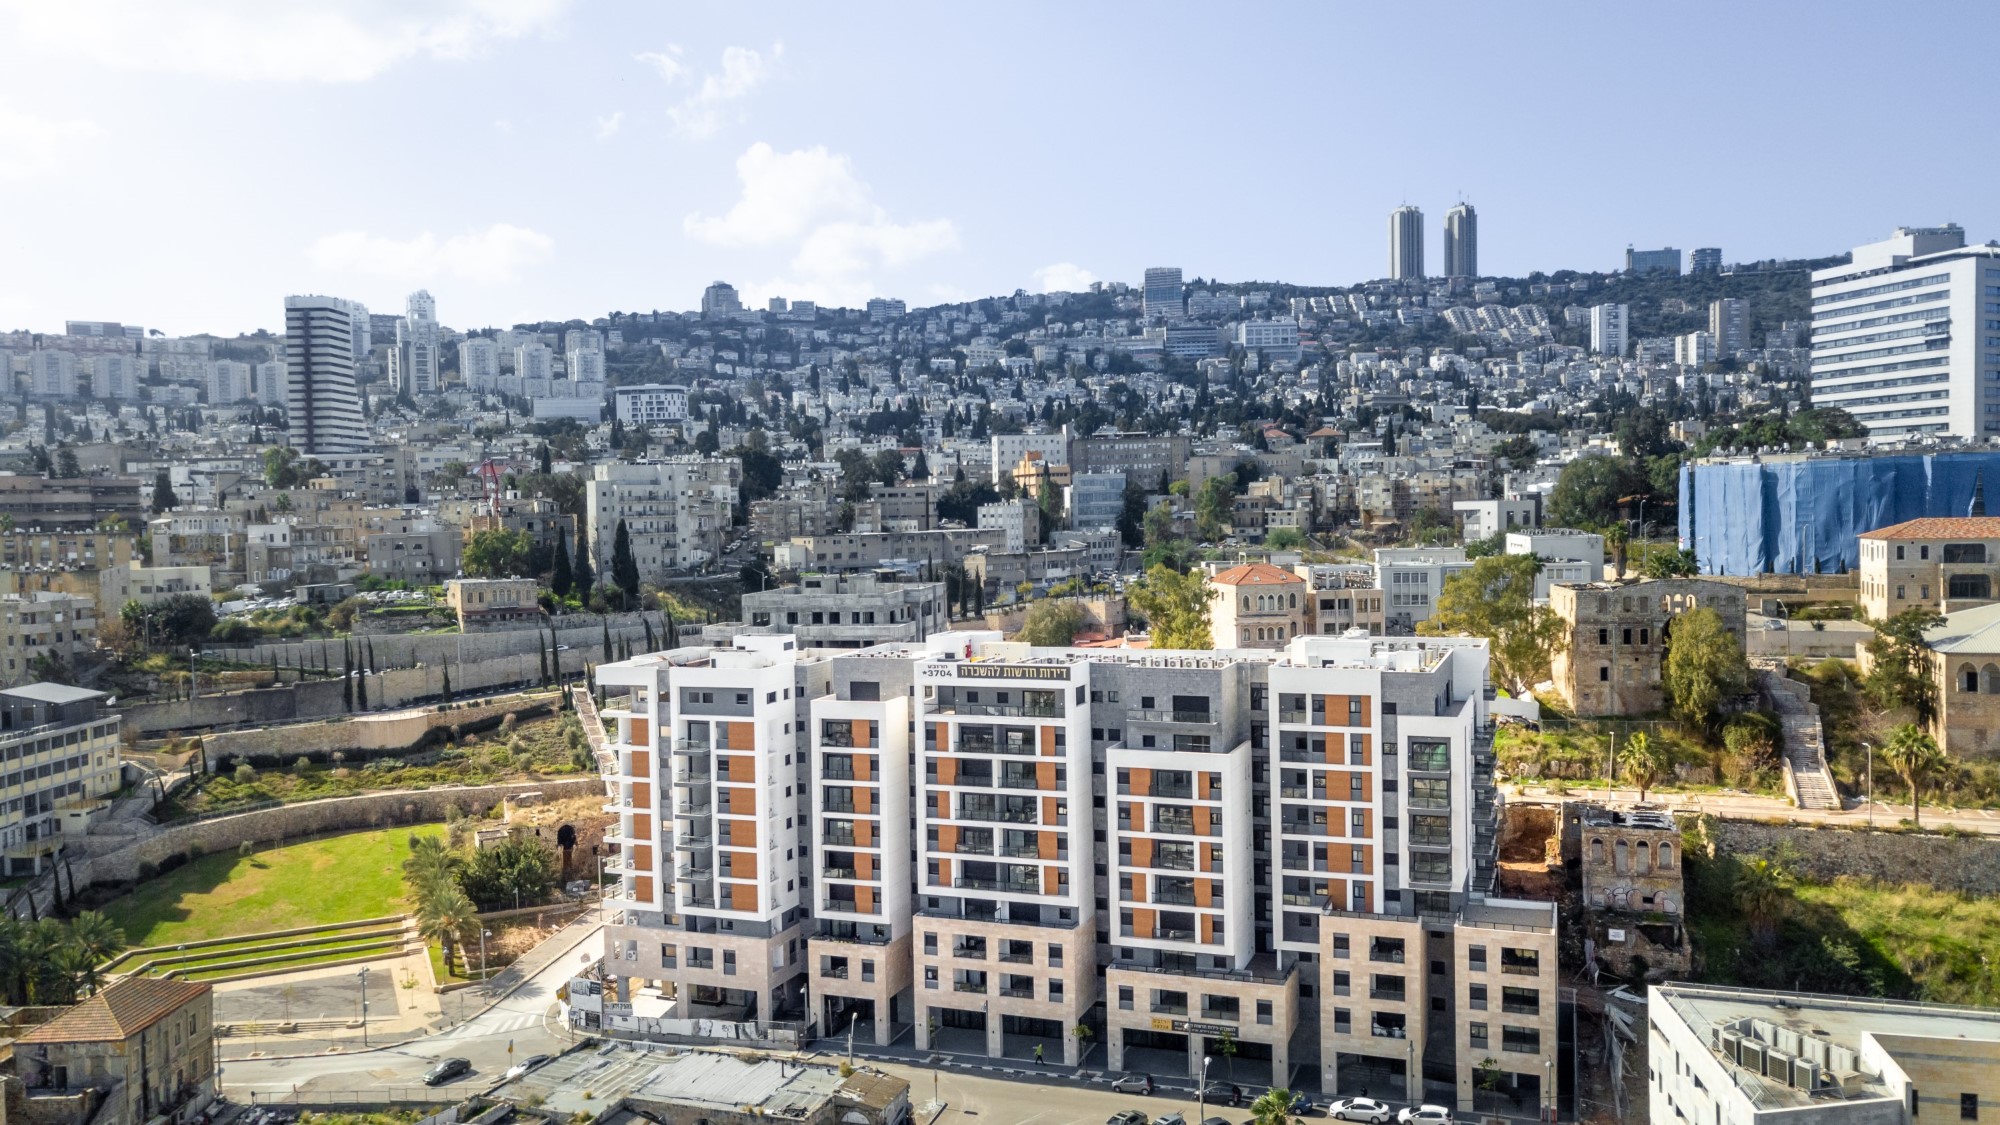 רובע האומנים בחיפה ממשיך להתאכלס עם מעל ל-100 משפחות שכבר גרות בשכונה